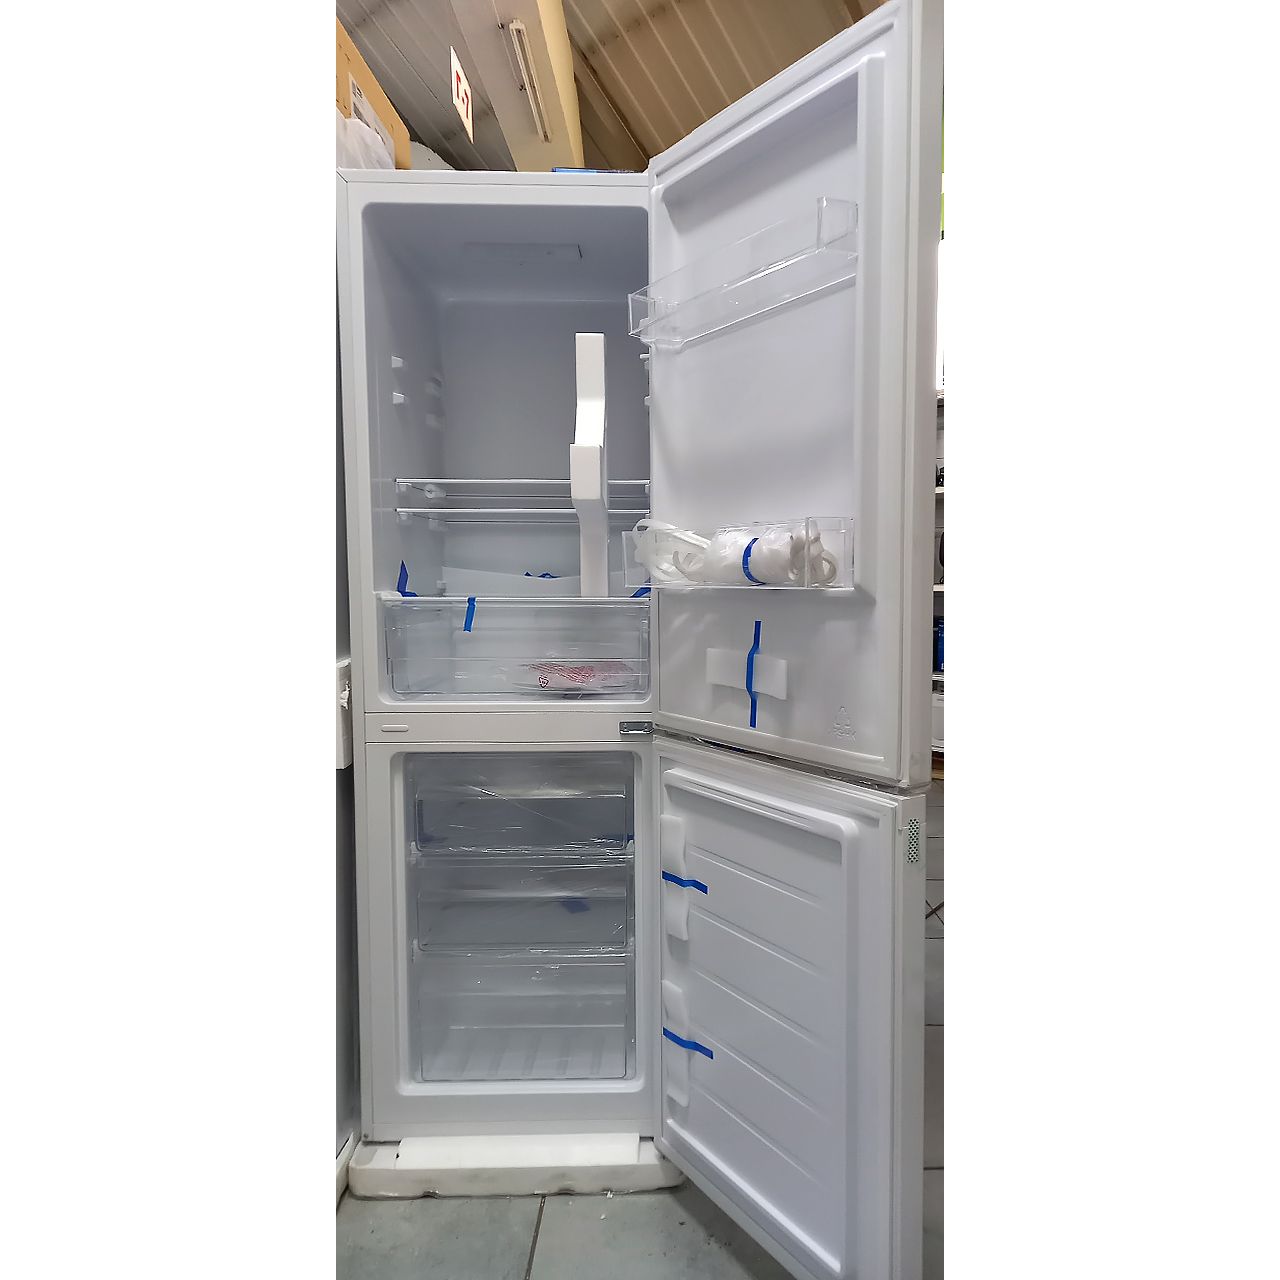 Холодильник двухкамерный Avest 227 литров